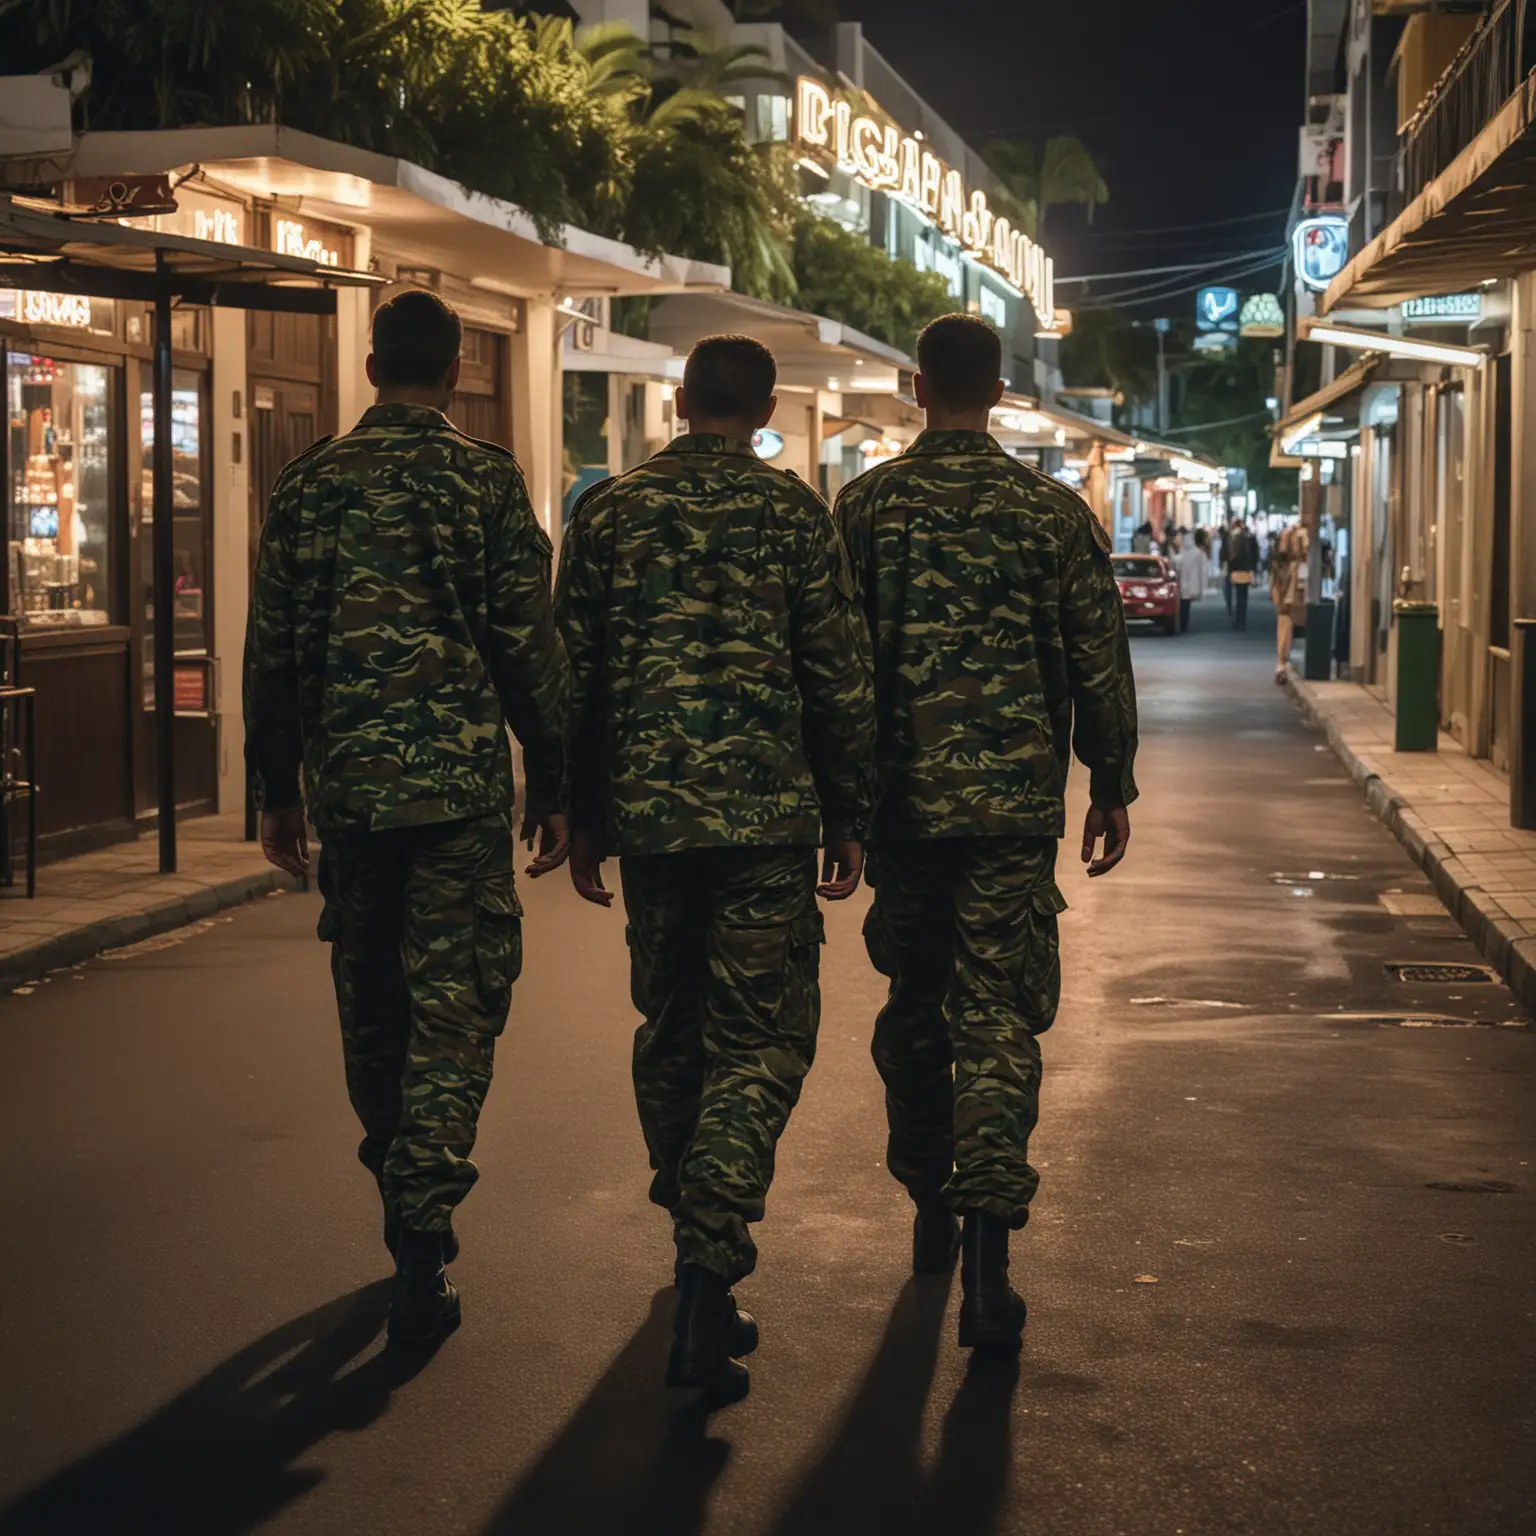 Dans l'environnement tropical de l'ile de la Réunion de nuit, dans une rue passante avec casino, bars, discothèque.
3 jeunes hommes militaires, habillés avec des treillis se balade dans la rue, on les voit de dos